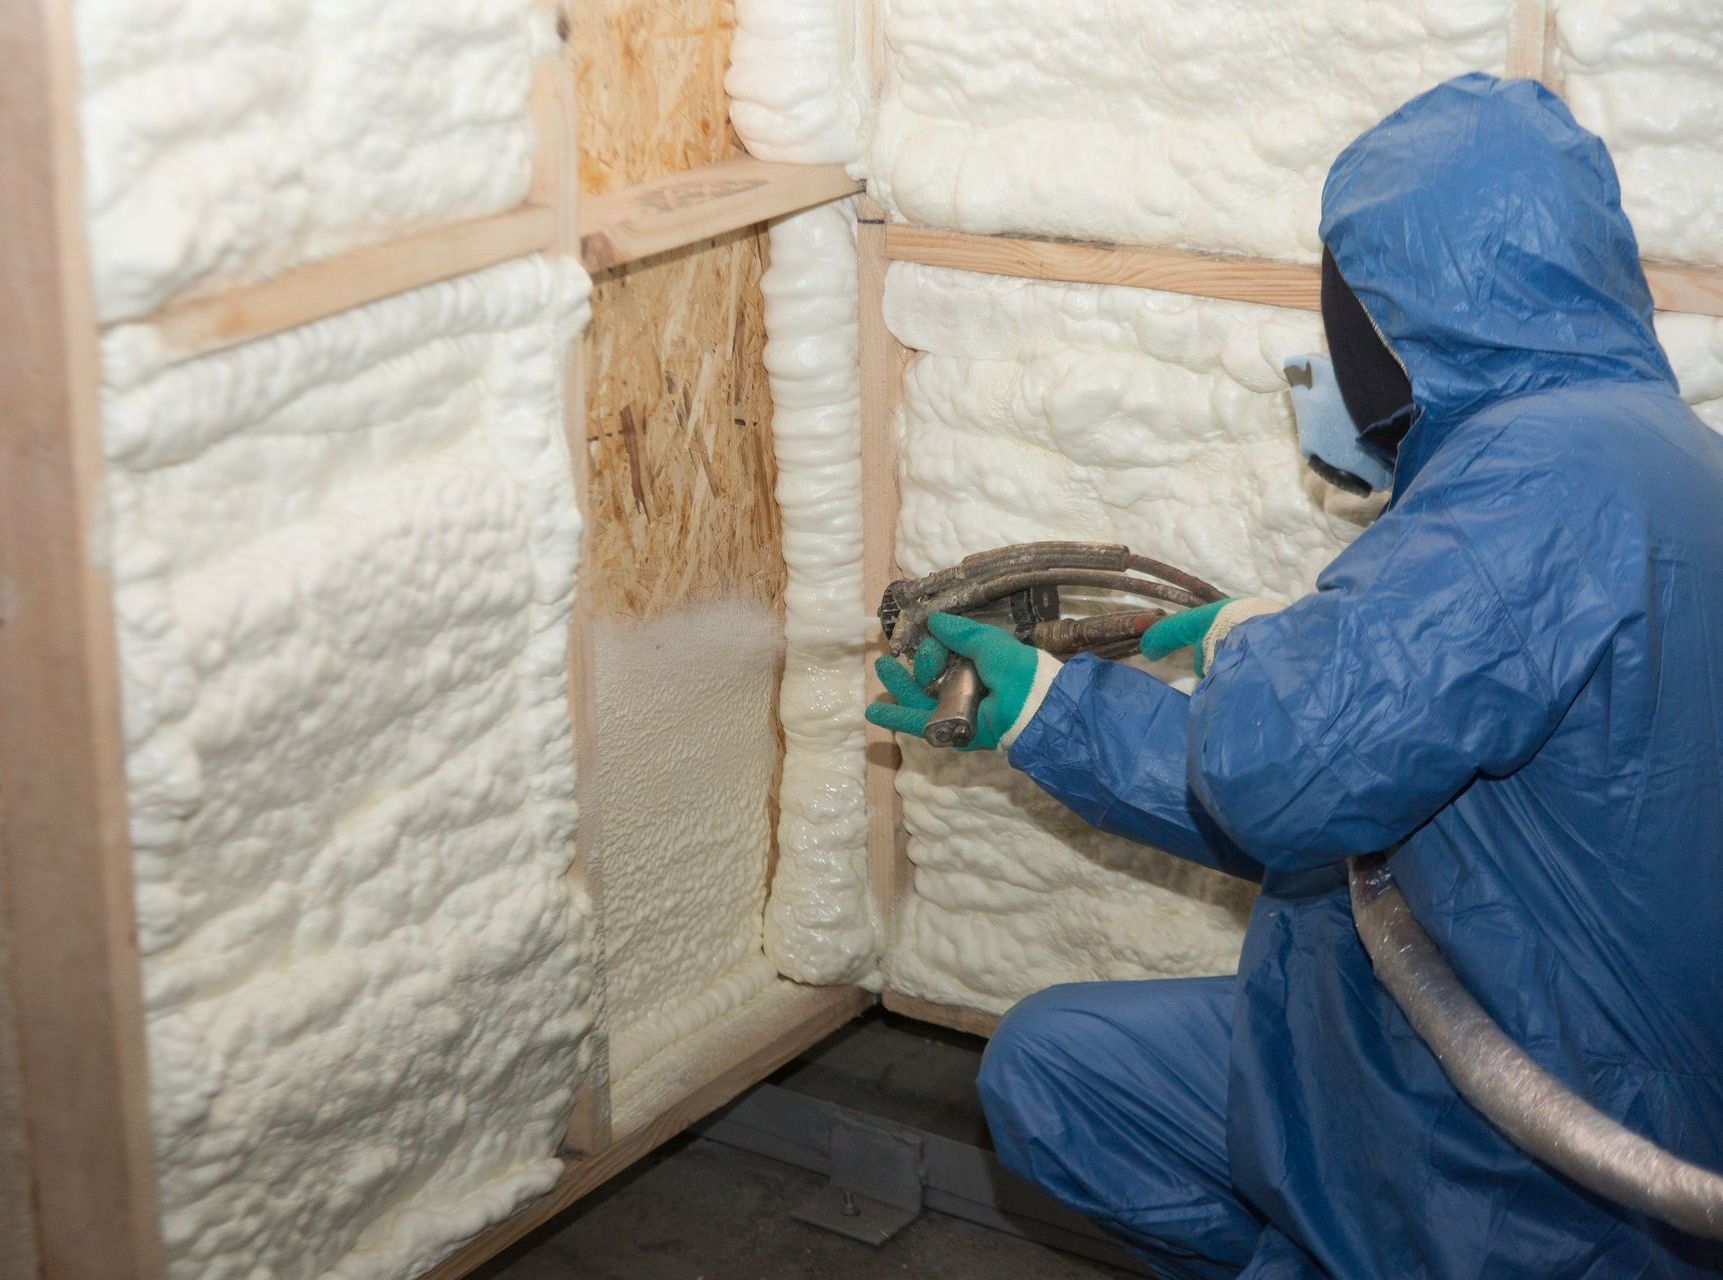 Burlington Queen City Spray Foam Contractor spraying insulation into walls